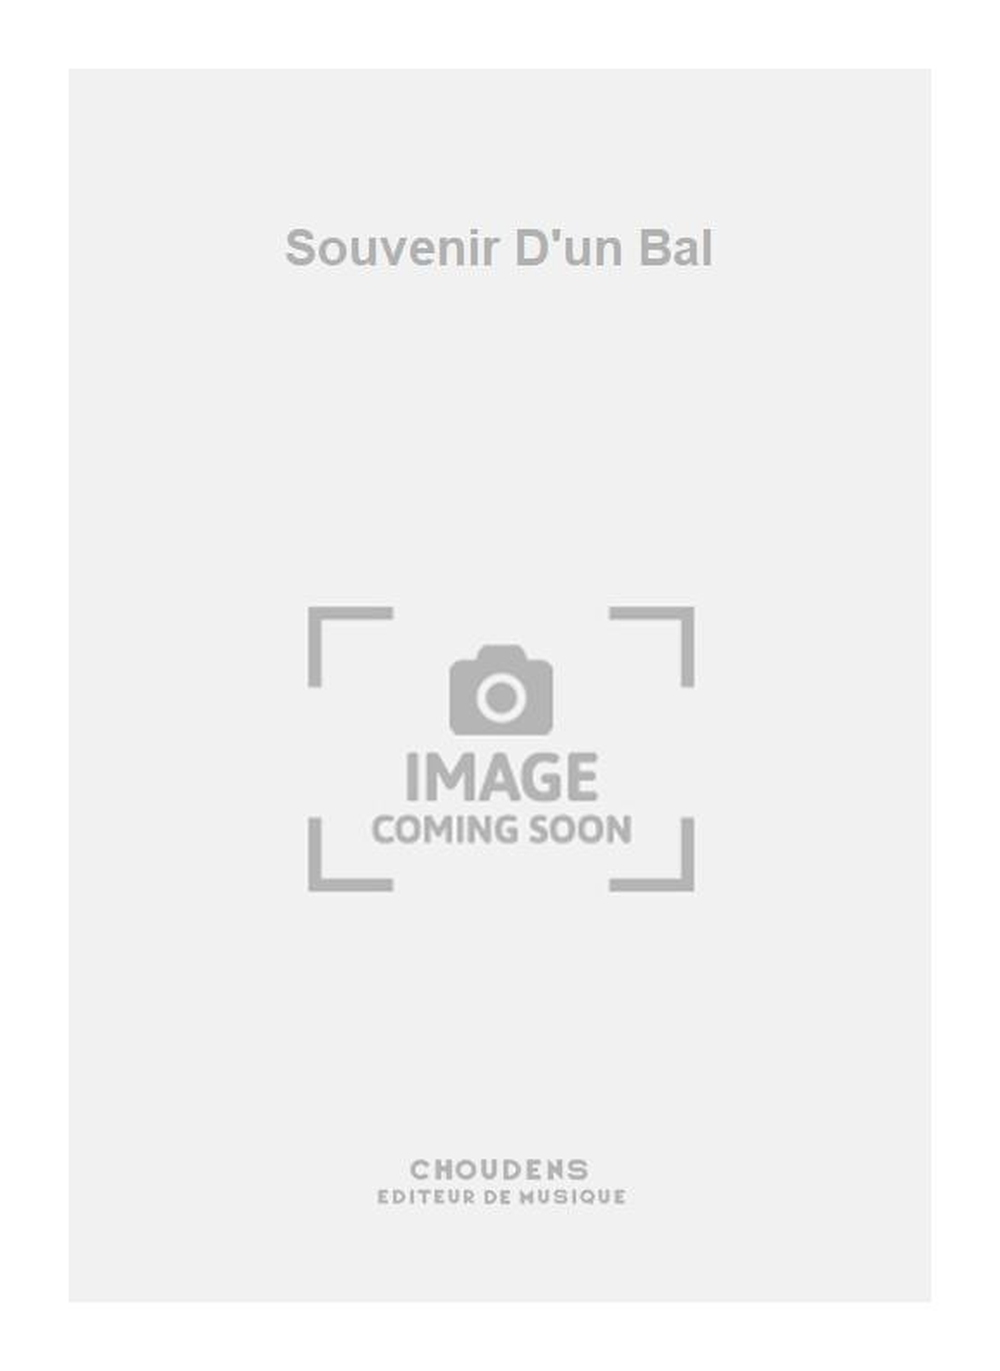 Charles Gounod: Souvenir D'un Bal